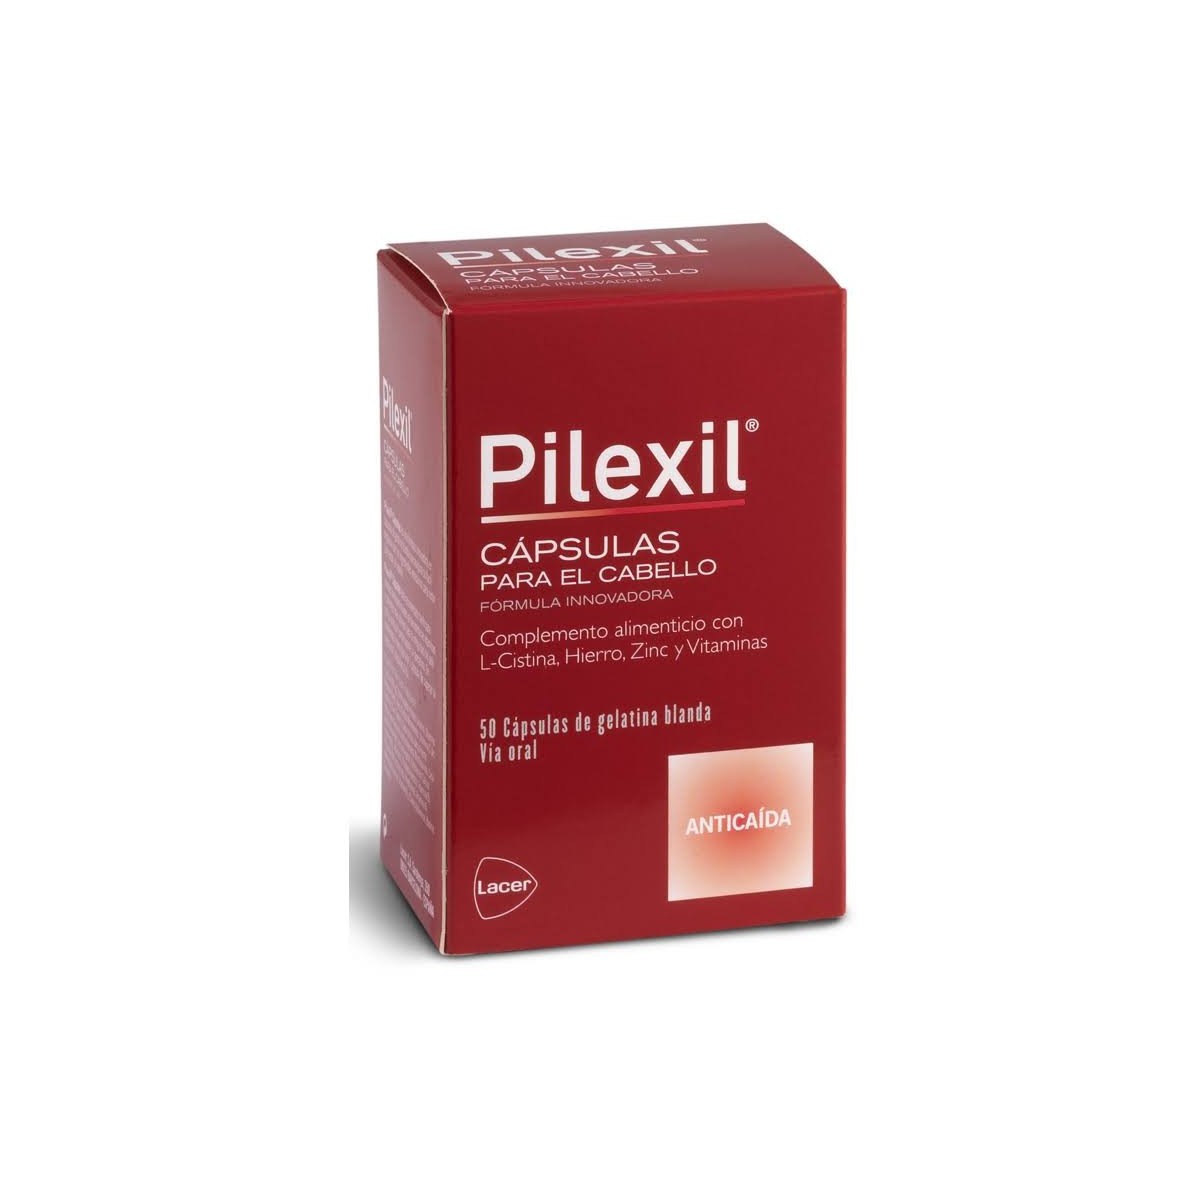 pilexil 50 capsulas